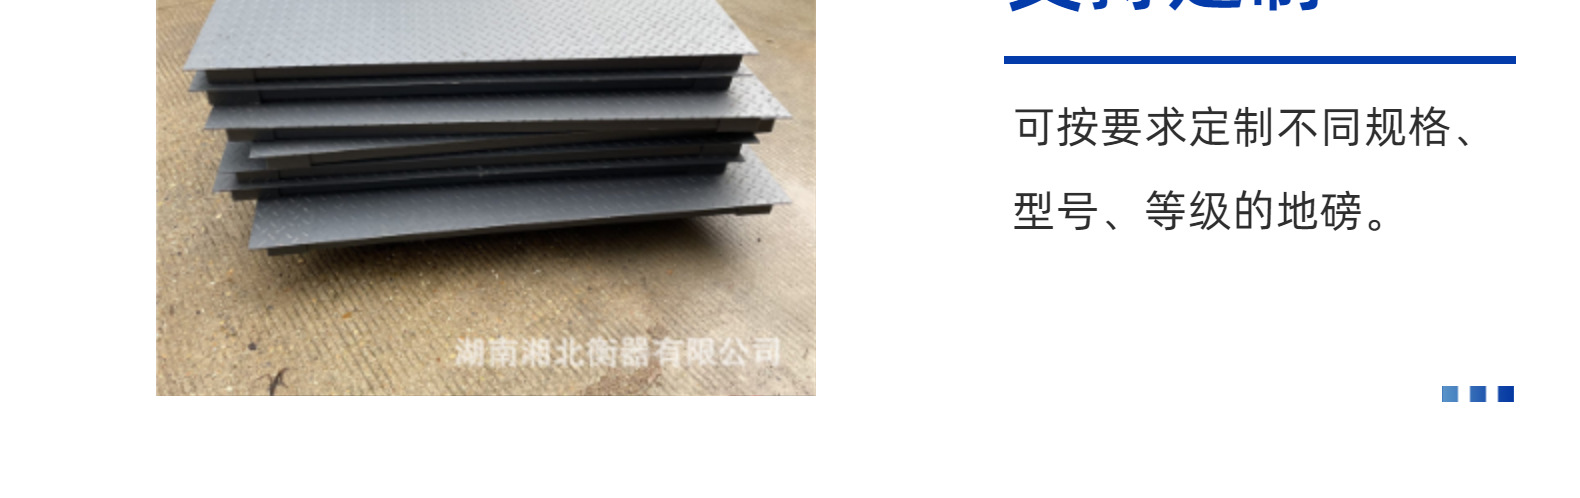 广州出口地磅 英文按键打印电子秤 1.5x1.5米5吨加厚平台秤